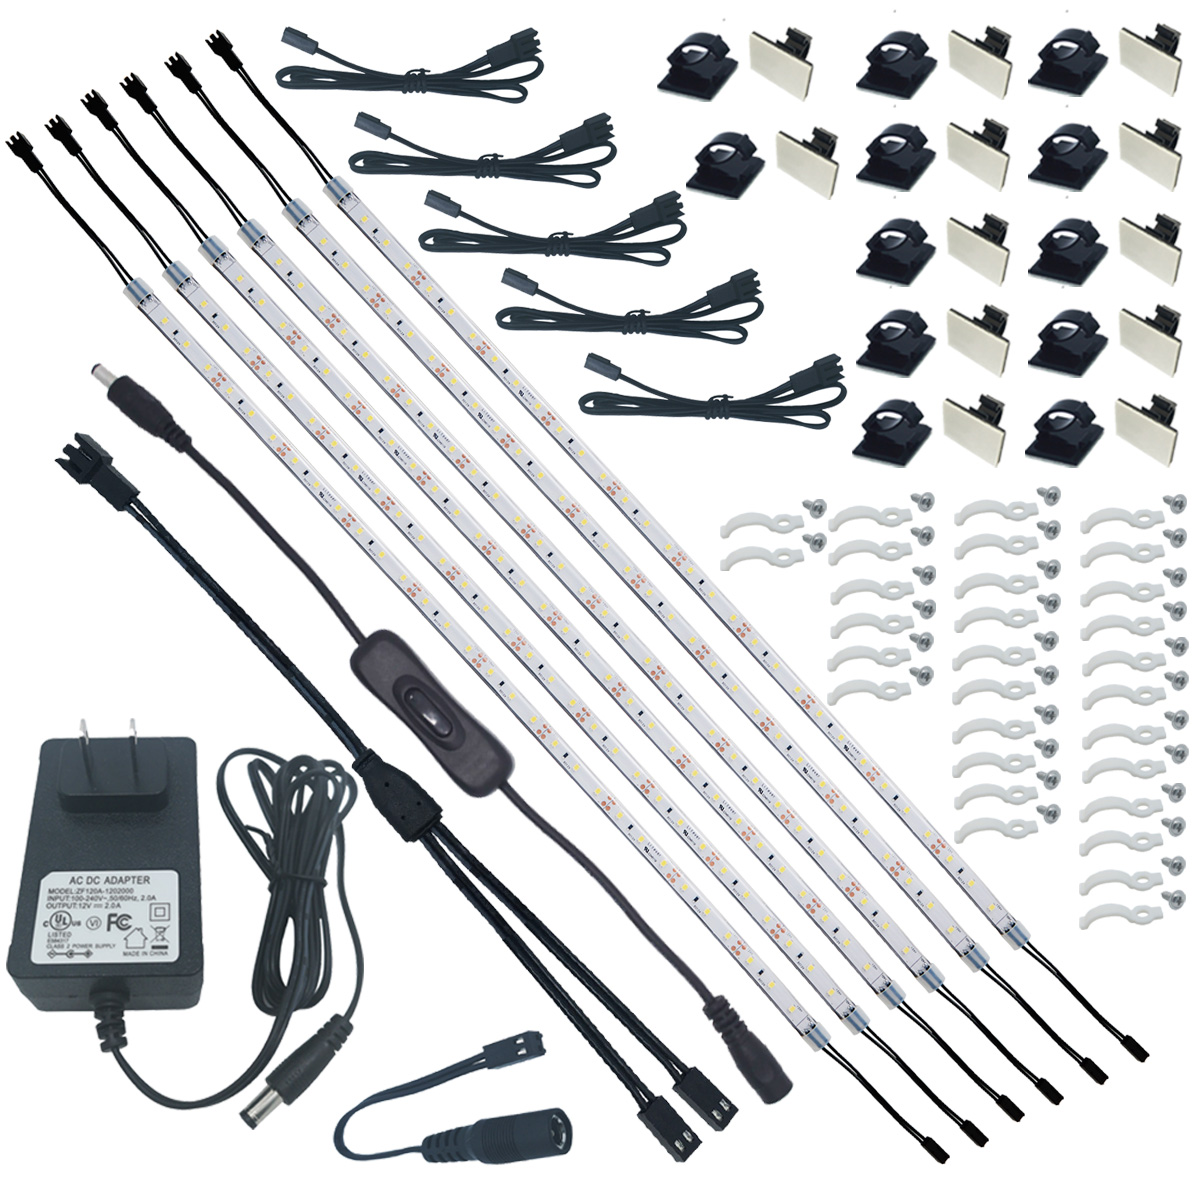 Under cabinet flexible strip light  kit,6 pack